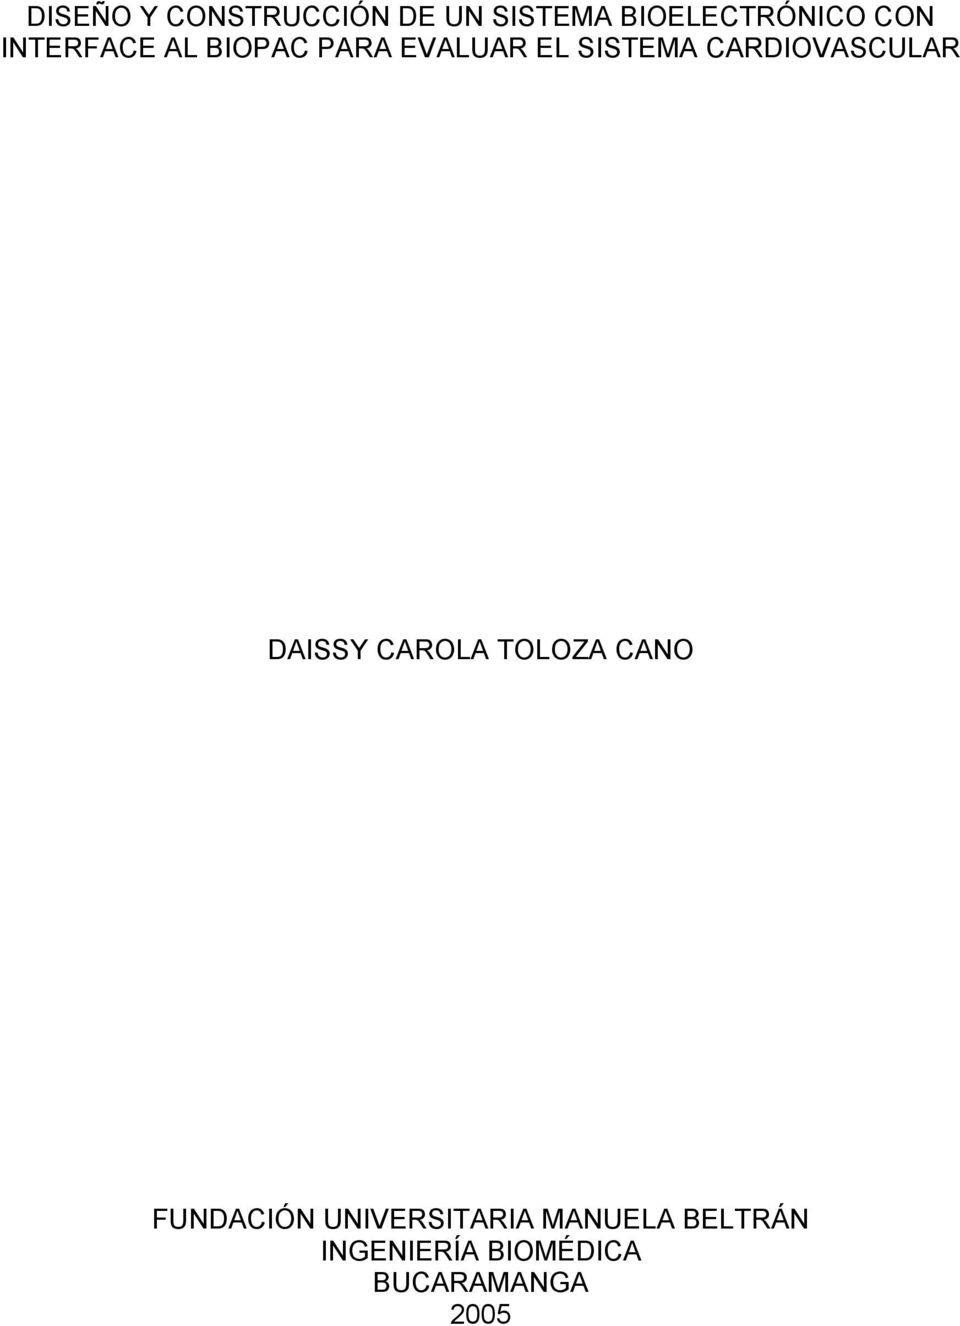 CARDIOVASCULAR DAISSY CAROLA TOLOZA CANO FUNDACIÓN